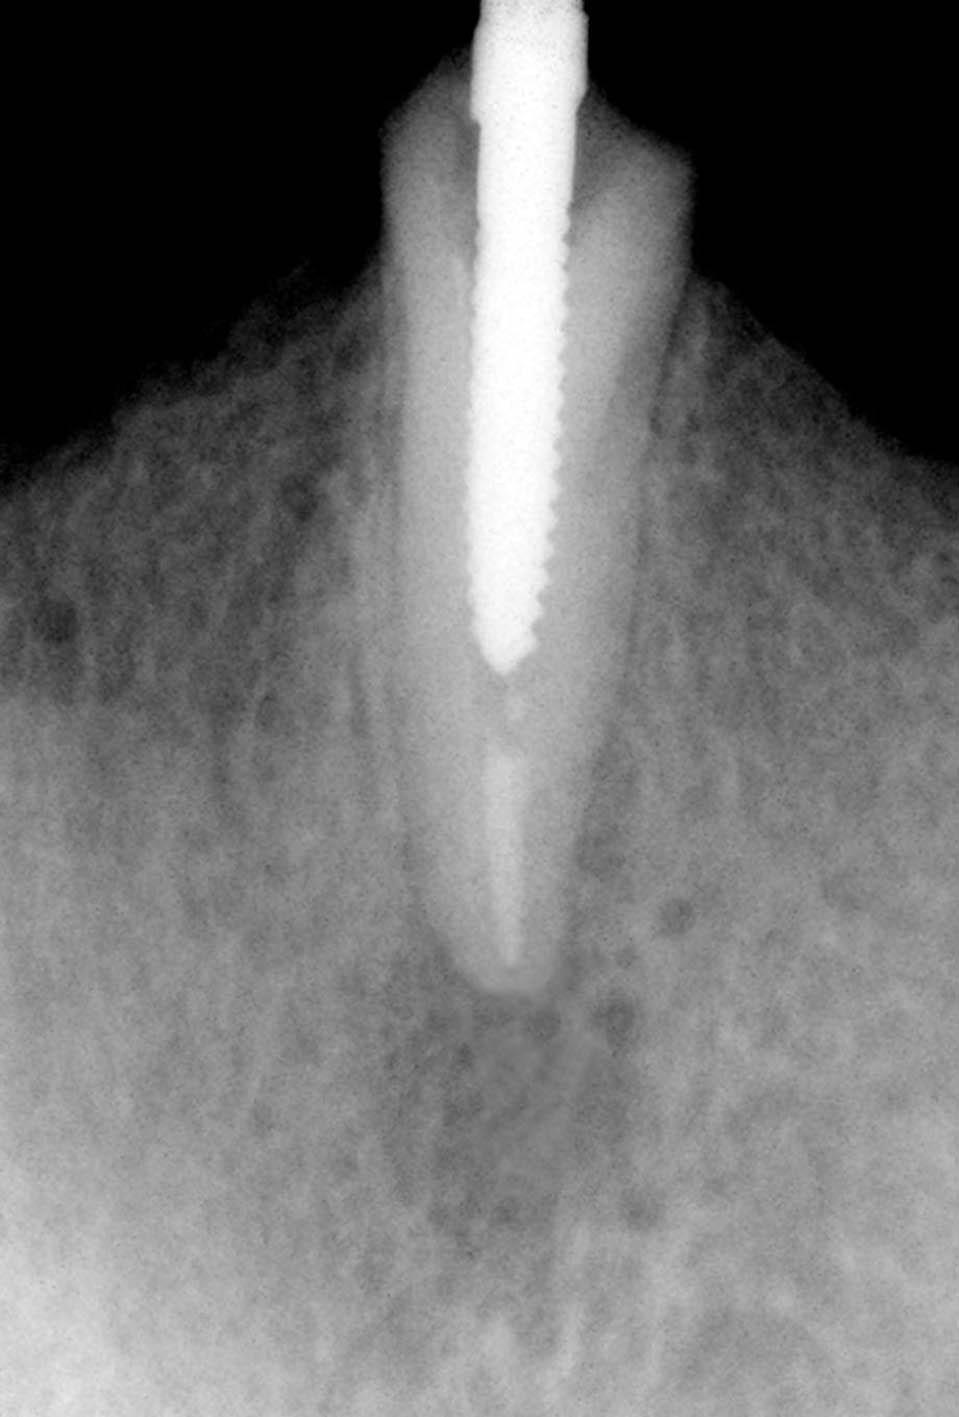 Kırılmış bir anterior dişin prefabrik post desteği ve kendi kırık parçası ile restore edilmesi Resim 4. Kor parçanın düzenlenmesi.